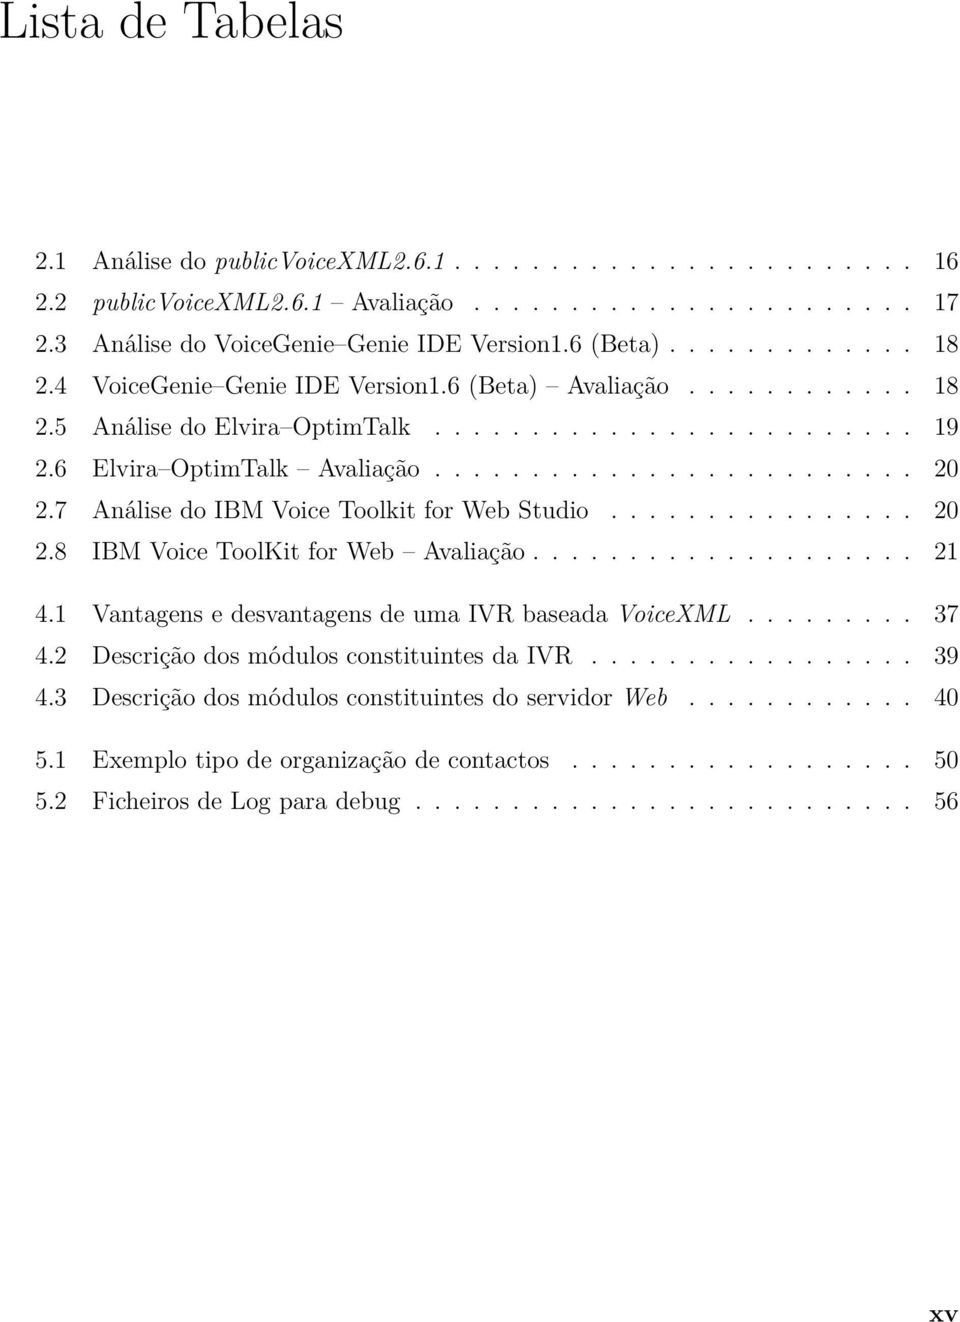 7 Análise do IBM Voice Toolkit for Web Studio................ 20 2.8 IBM Voice ToolKit for Web Avaliação.................... 21 4.1 Vantagens e desvantagens de uma IVR baseada VoiceXML......... 37 4.